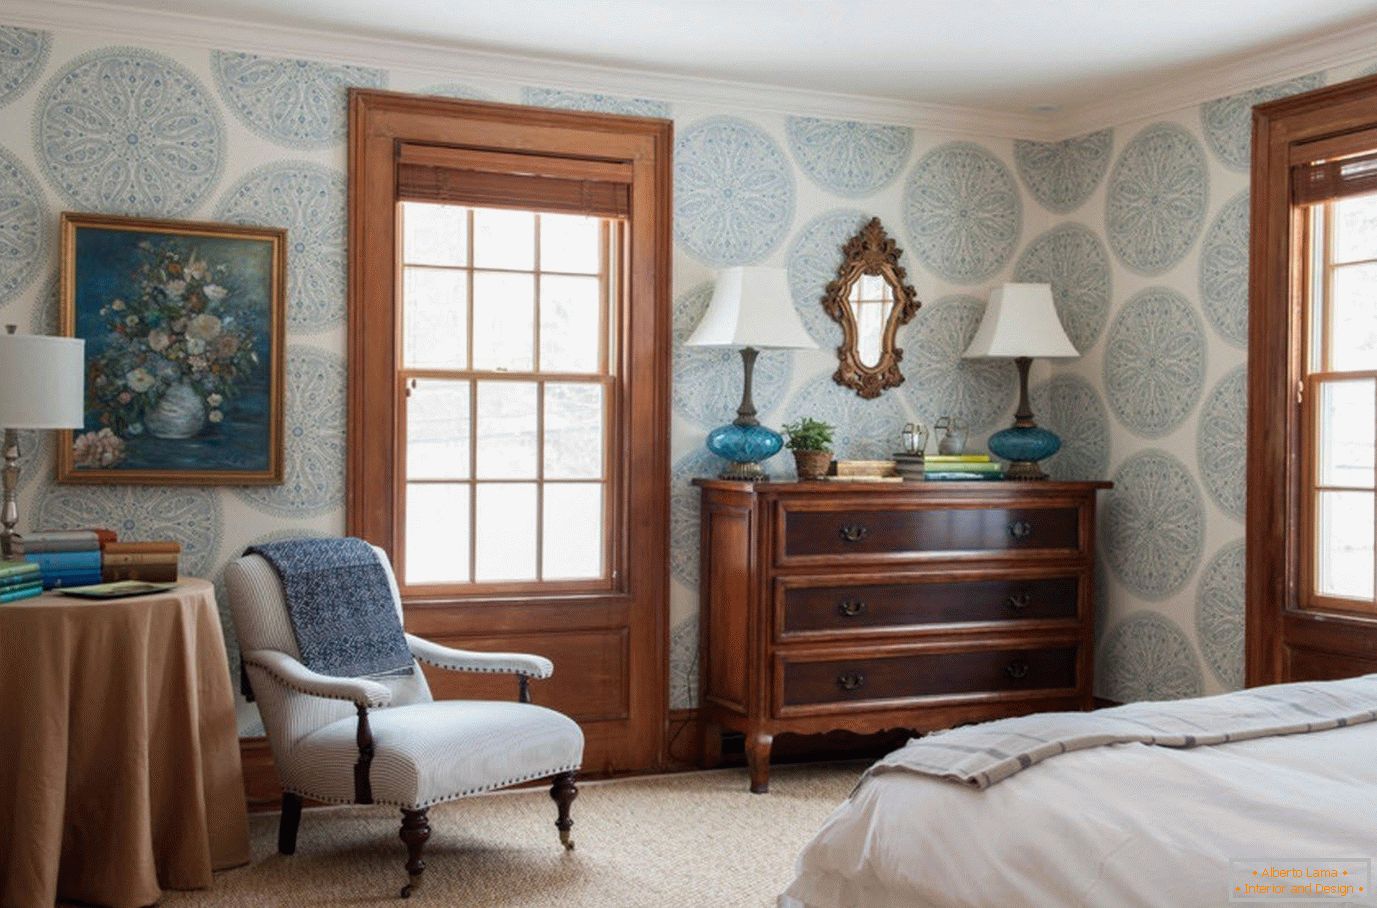 Modrá tapeta s ornamentem v ložnici